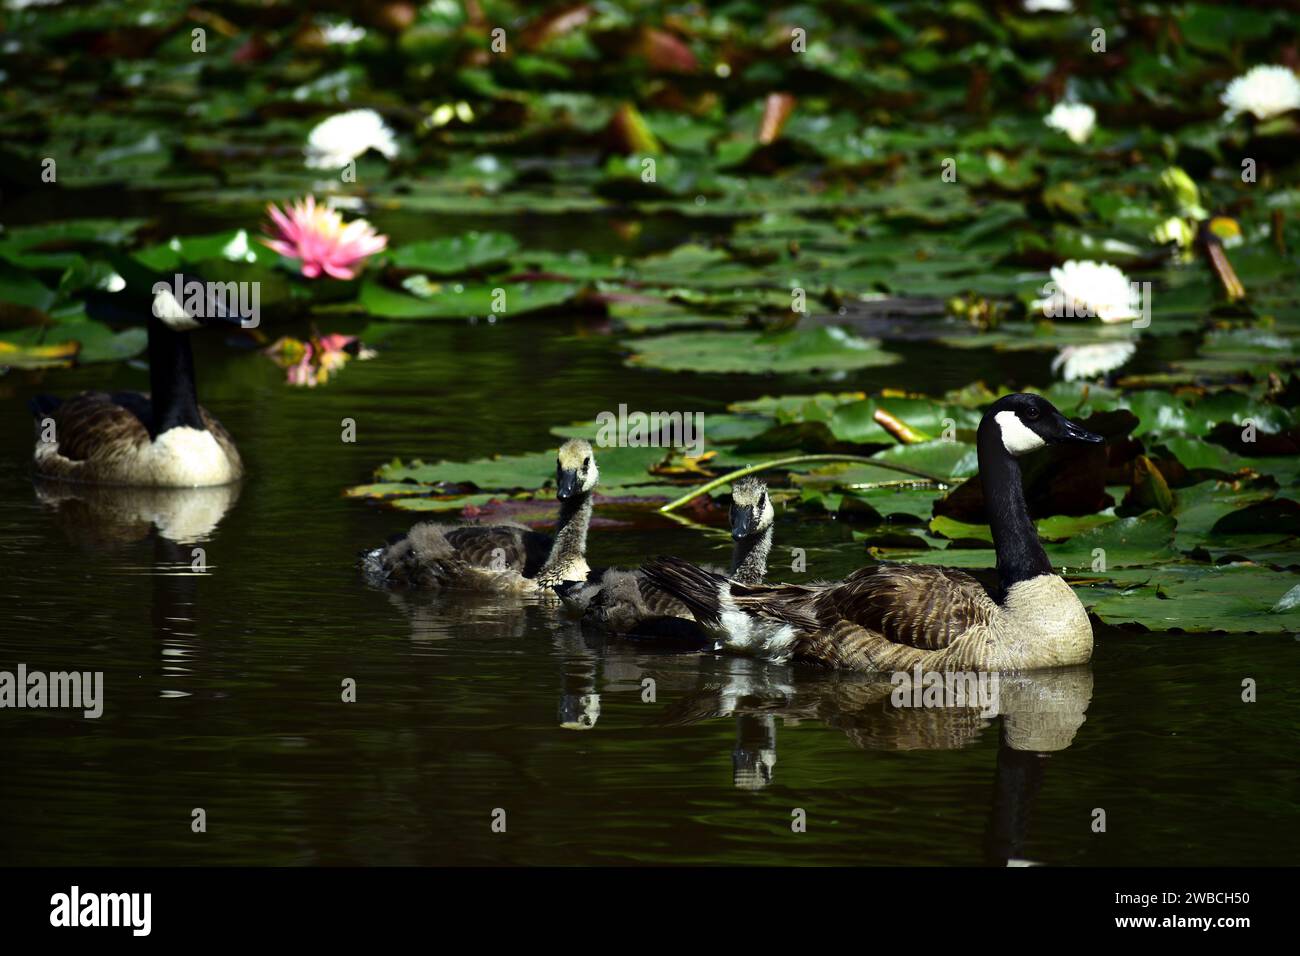 Famiglia di oche canadesi con due uccelli adulti e due pulcini in uno stagno. Si tratta di una grande oca selvatica con testa e collo neri e guance bianche. Foto Stock